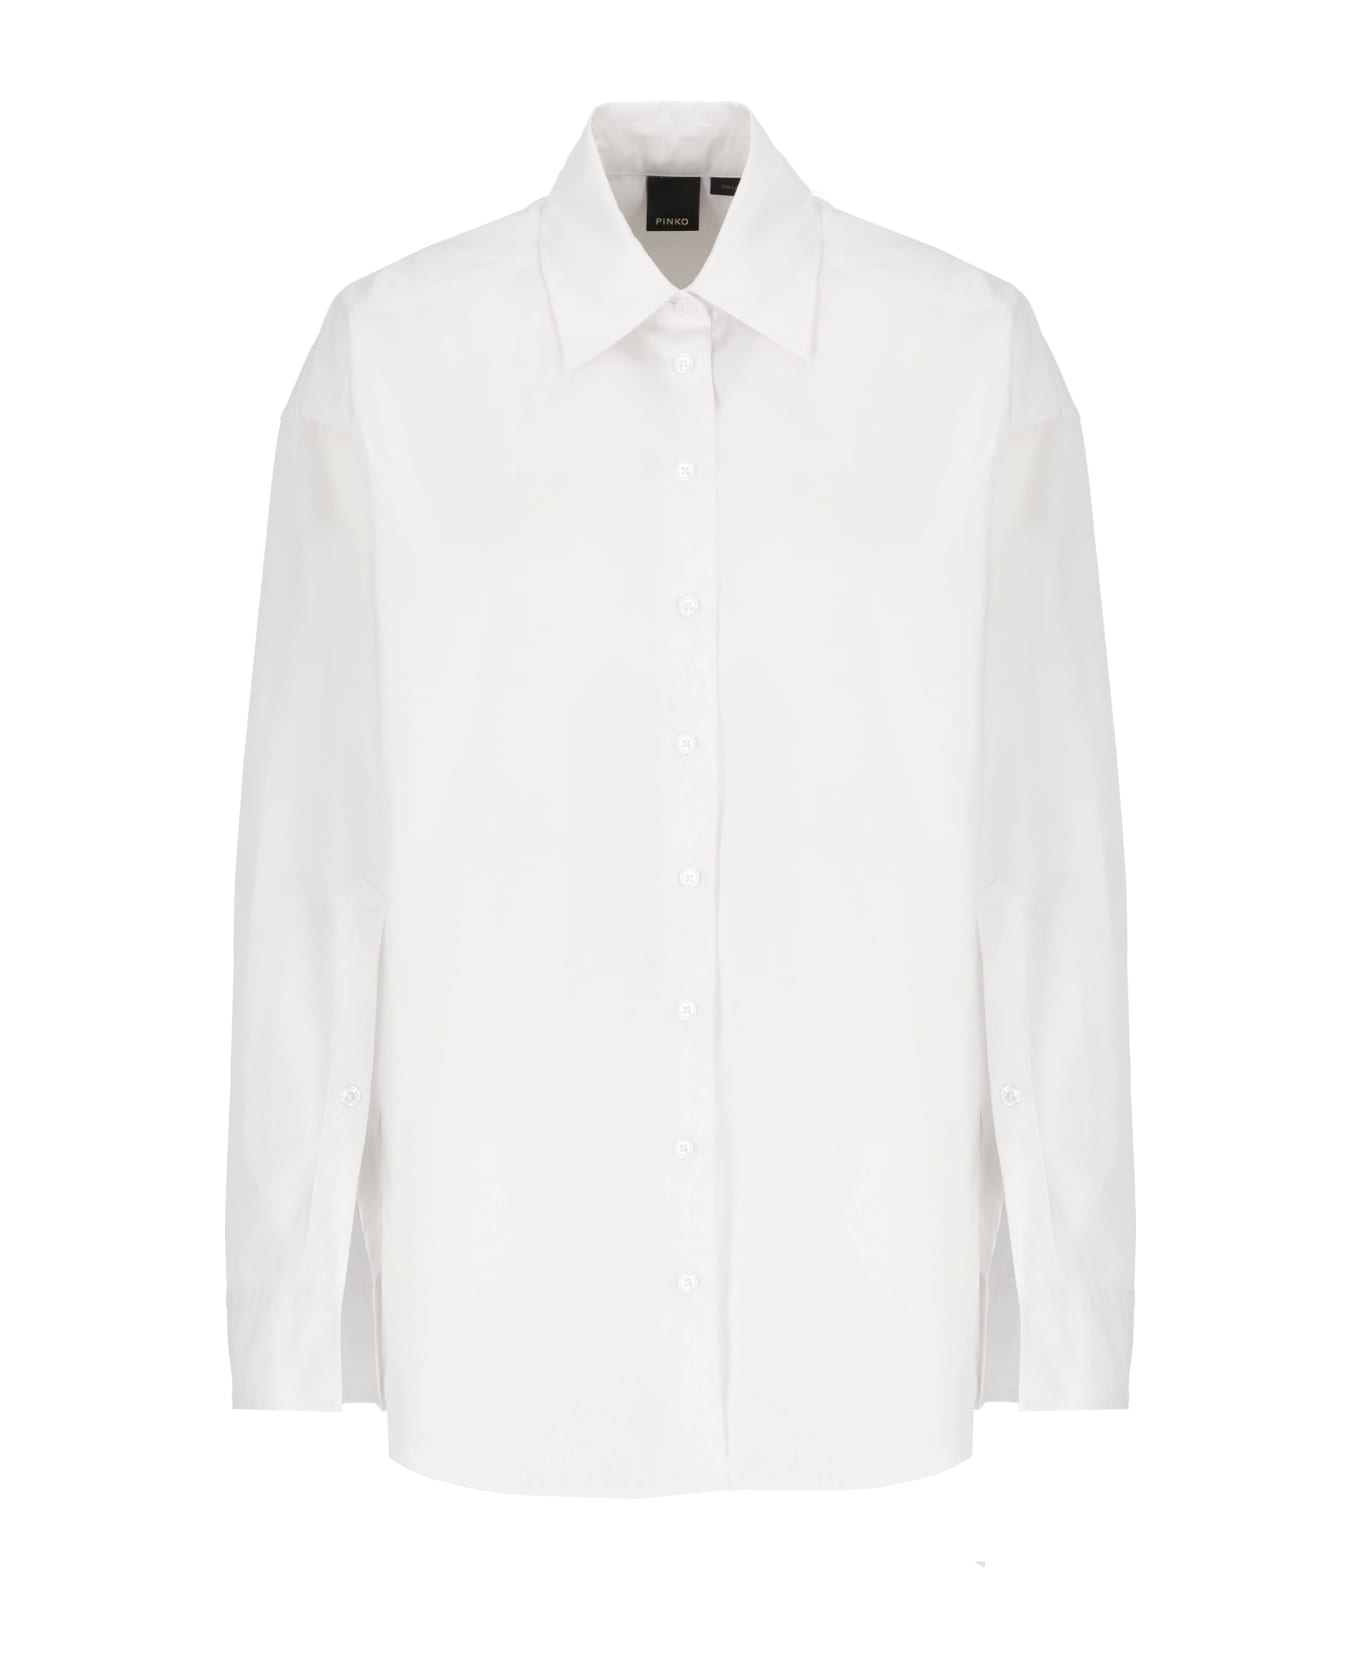 Pinko Eden Shirts - White